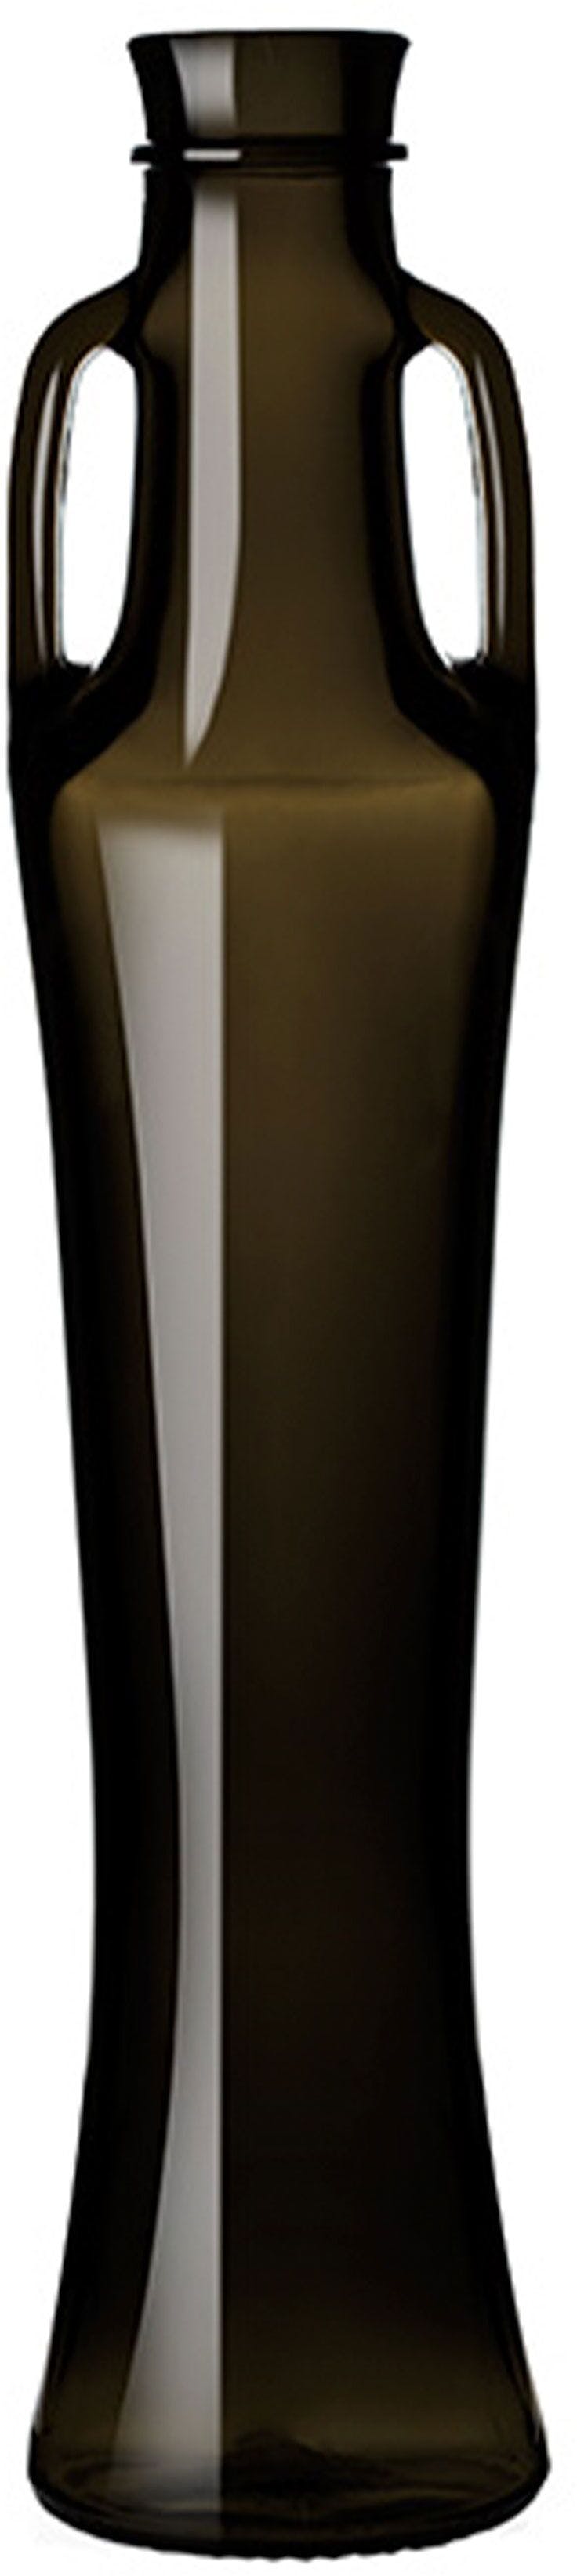 Bottle ANFORA PENELOPE 250 BP VQ